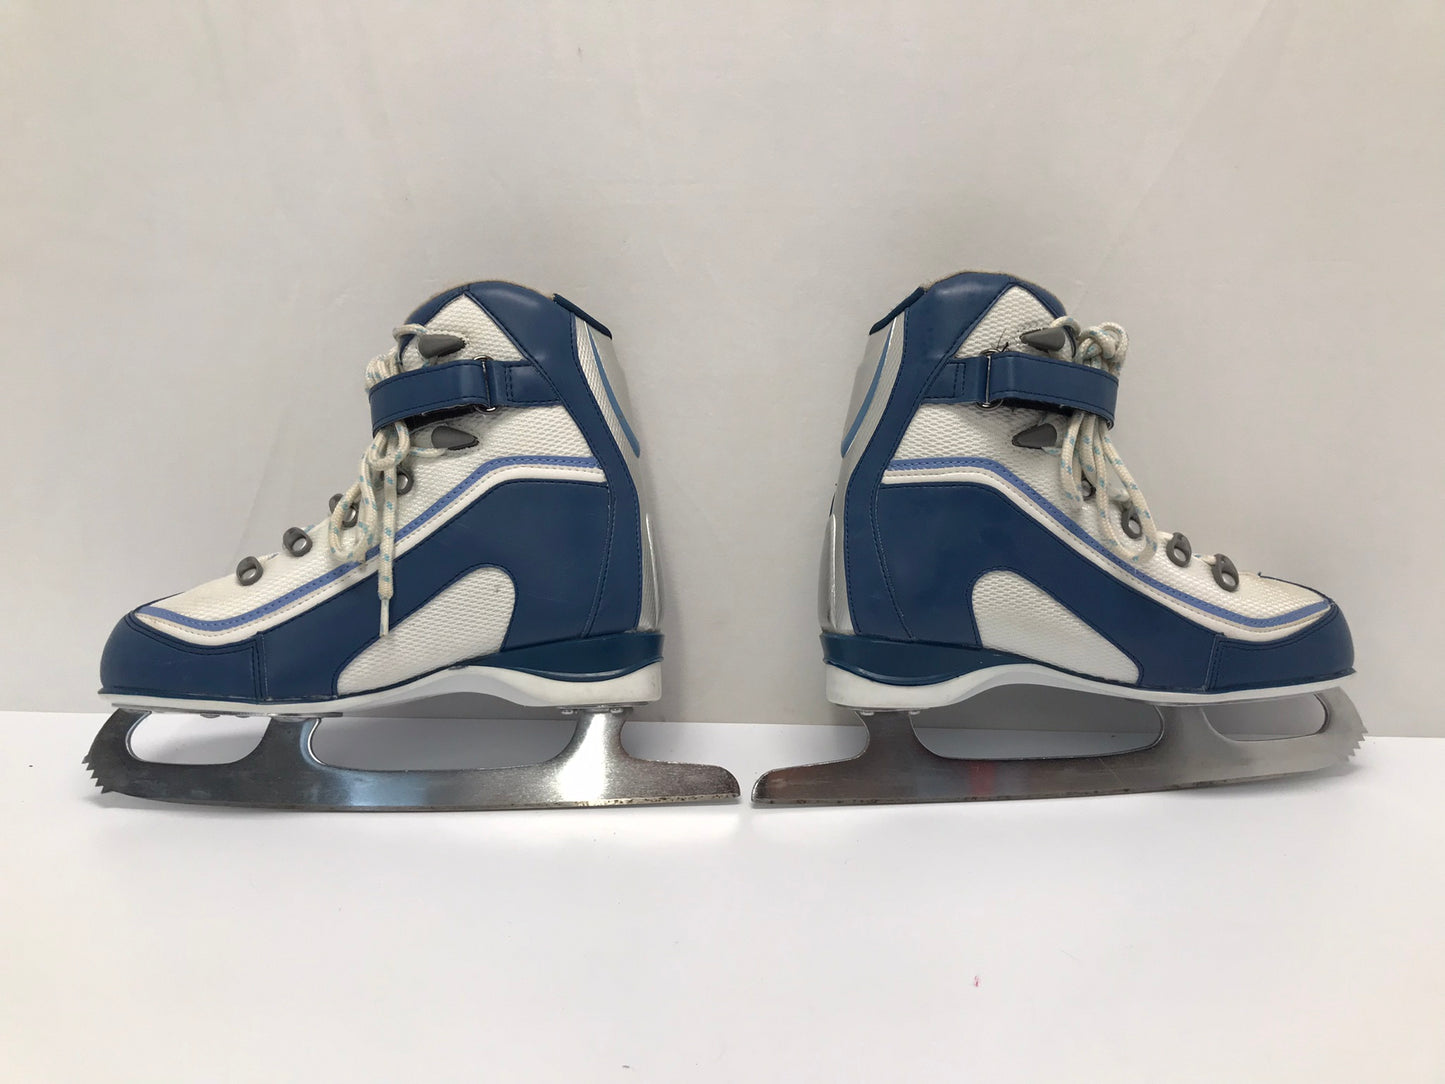 Figure Skates Ladies Size 7 Soft Skates Blue White As New